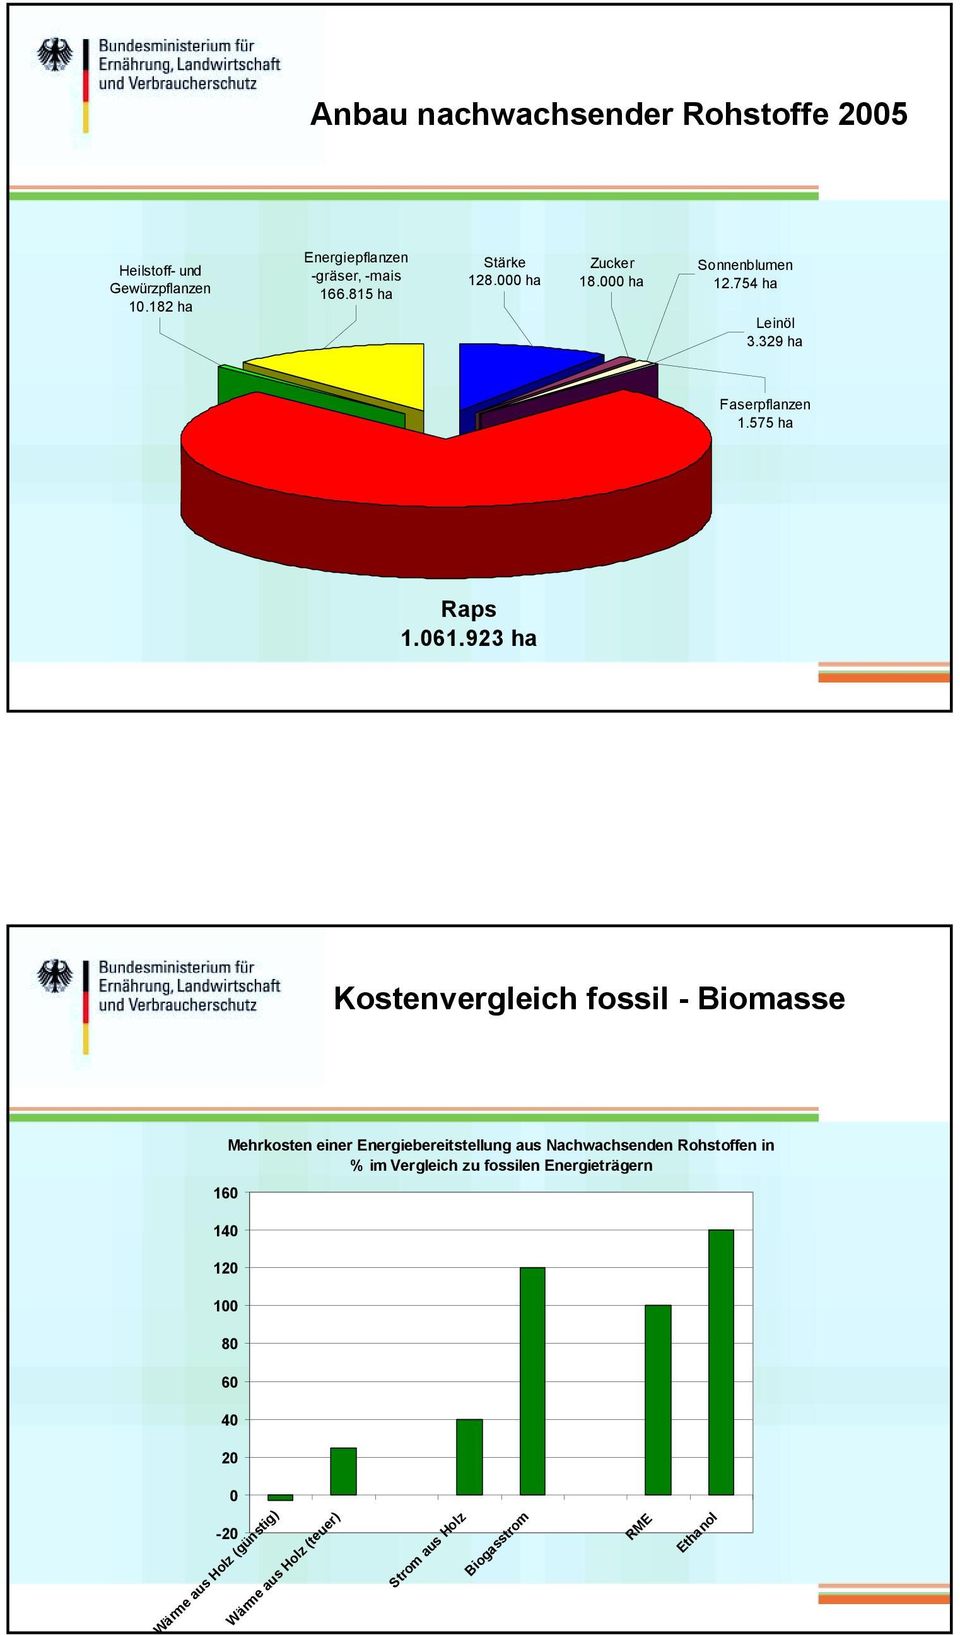 923 ha Kostenvergleich fossil - Biomasse 160 Mehrkosten einer Energiebereitstellung aus Nachwachsenden Rohstoffen in % im